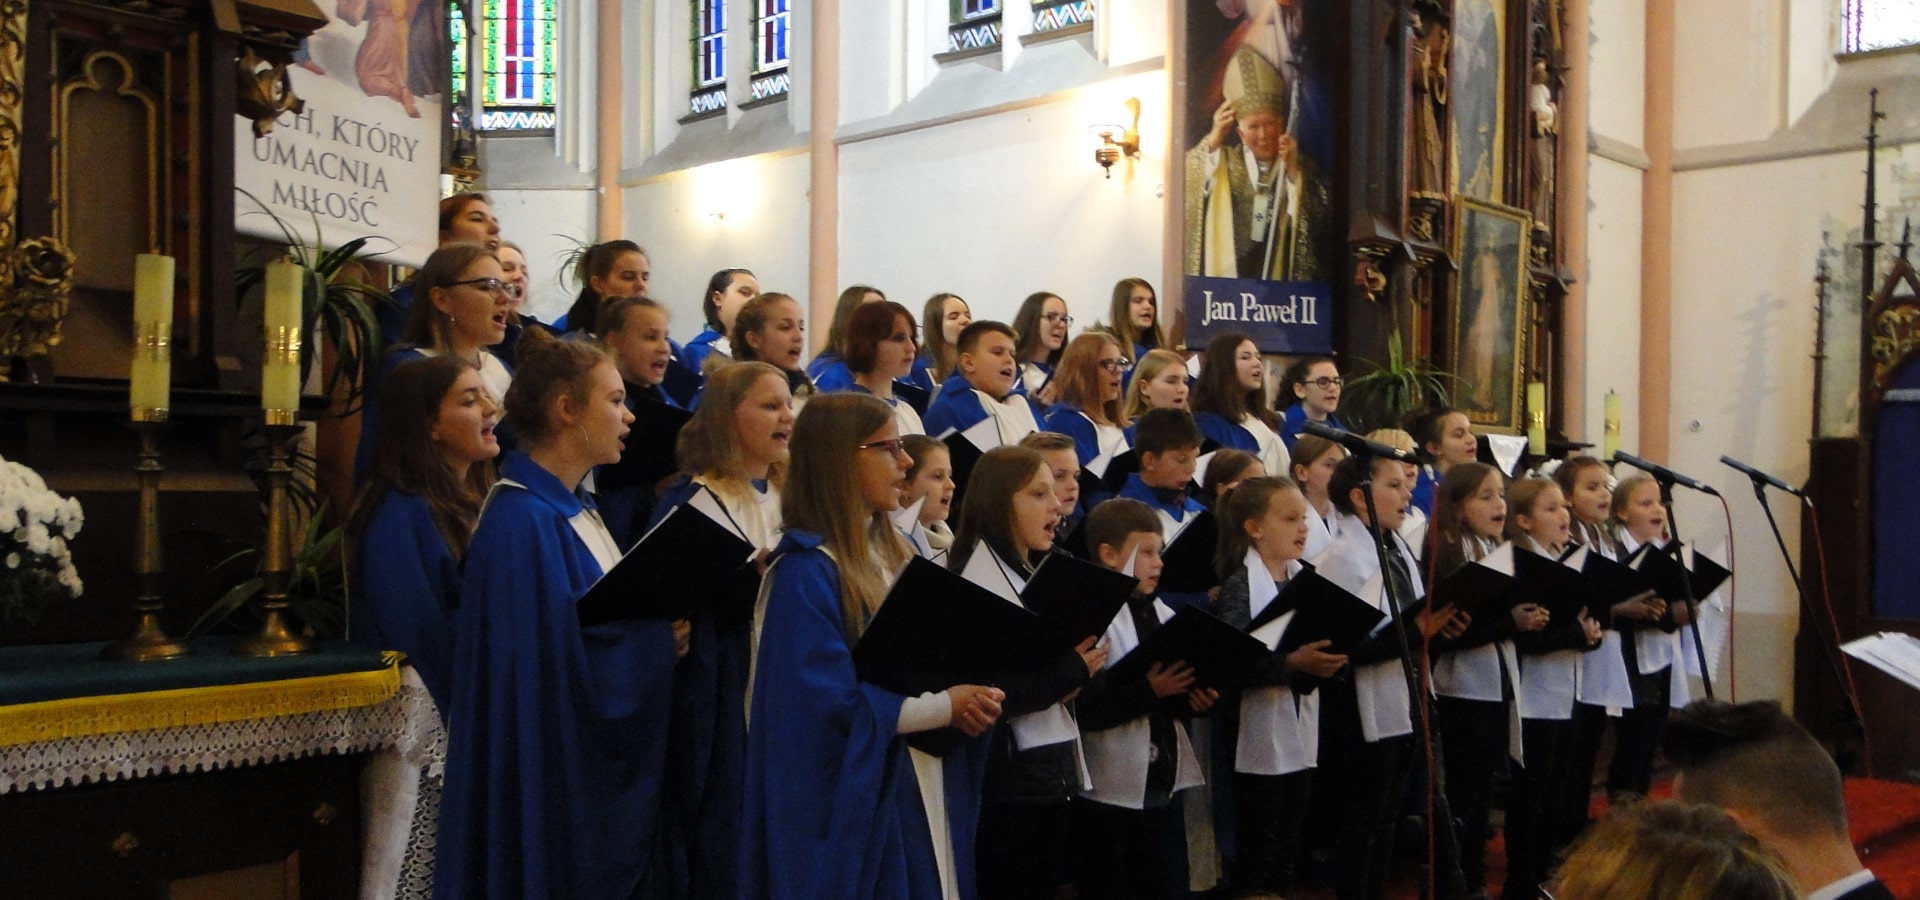 Chór Zespołu Szkół w Trzcinicy podczas koncertu w kościele w Smogorzowie